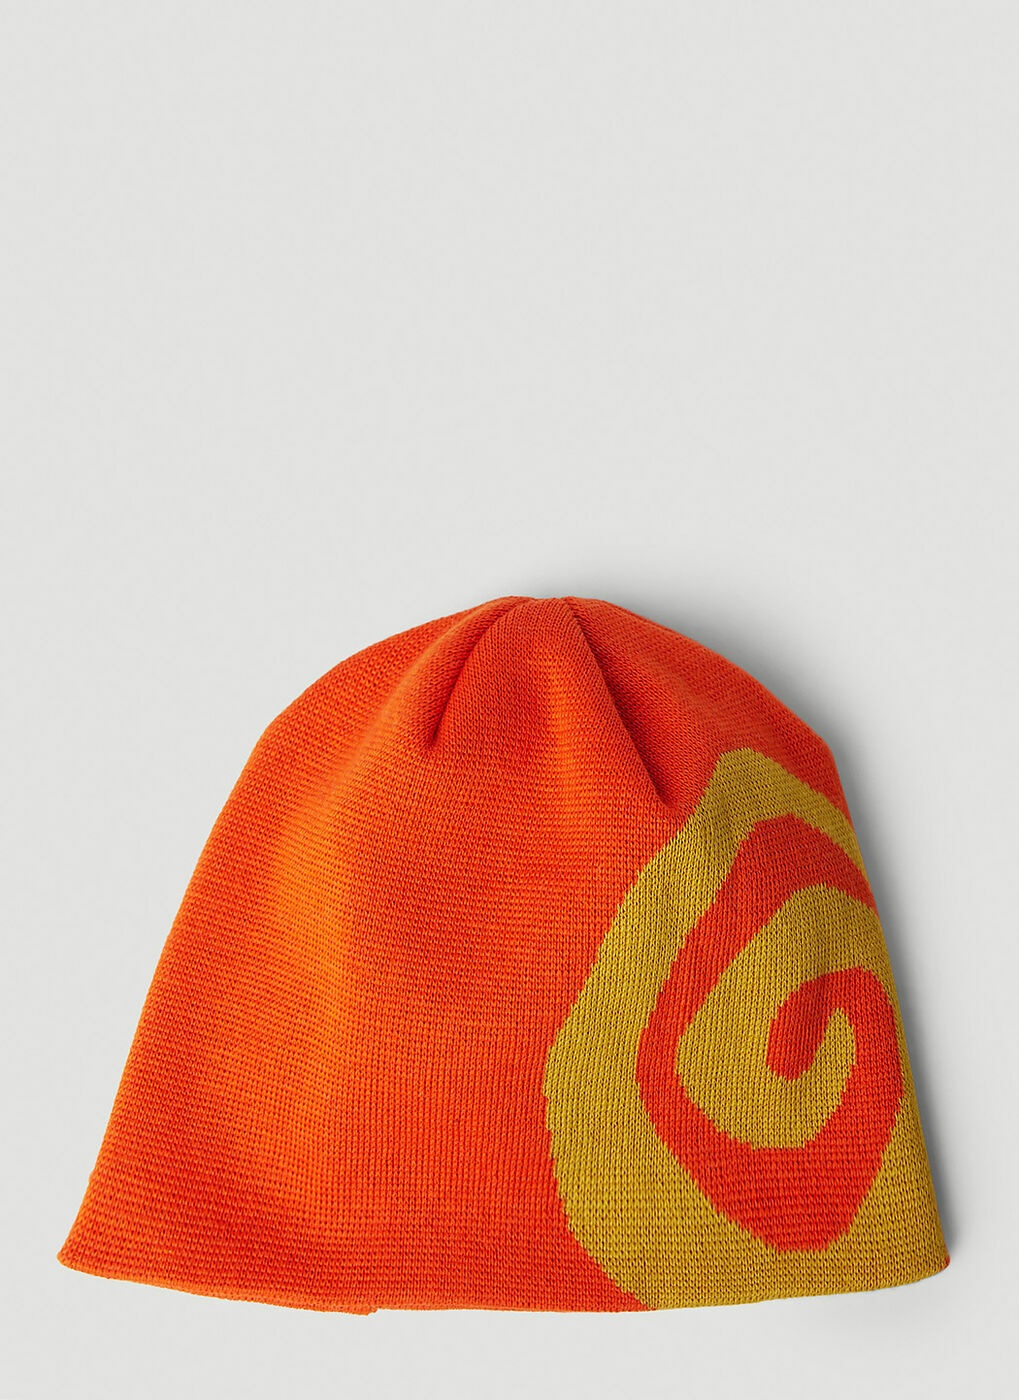 Swirl Beanie Hat in Orange Ostrya